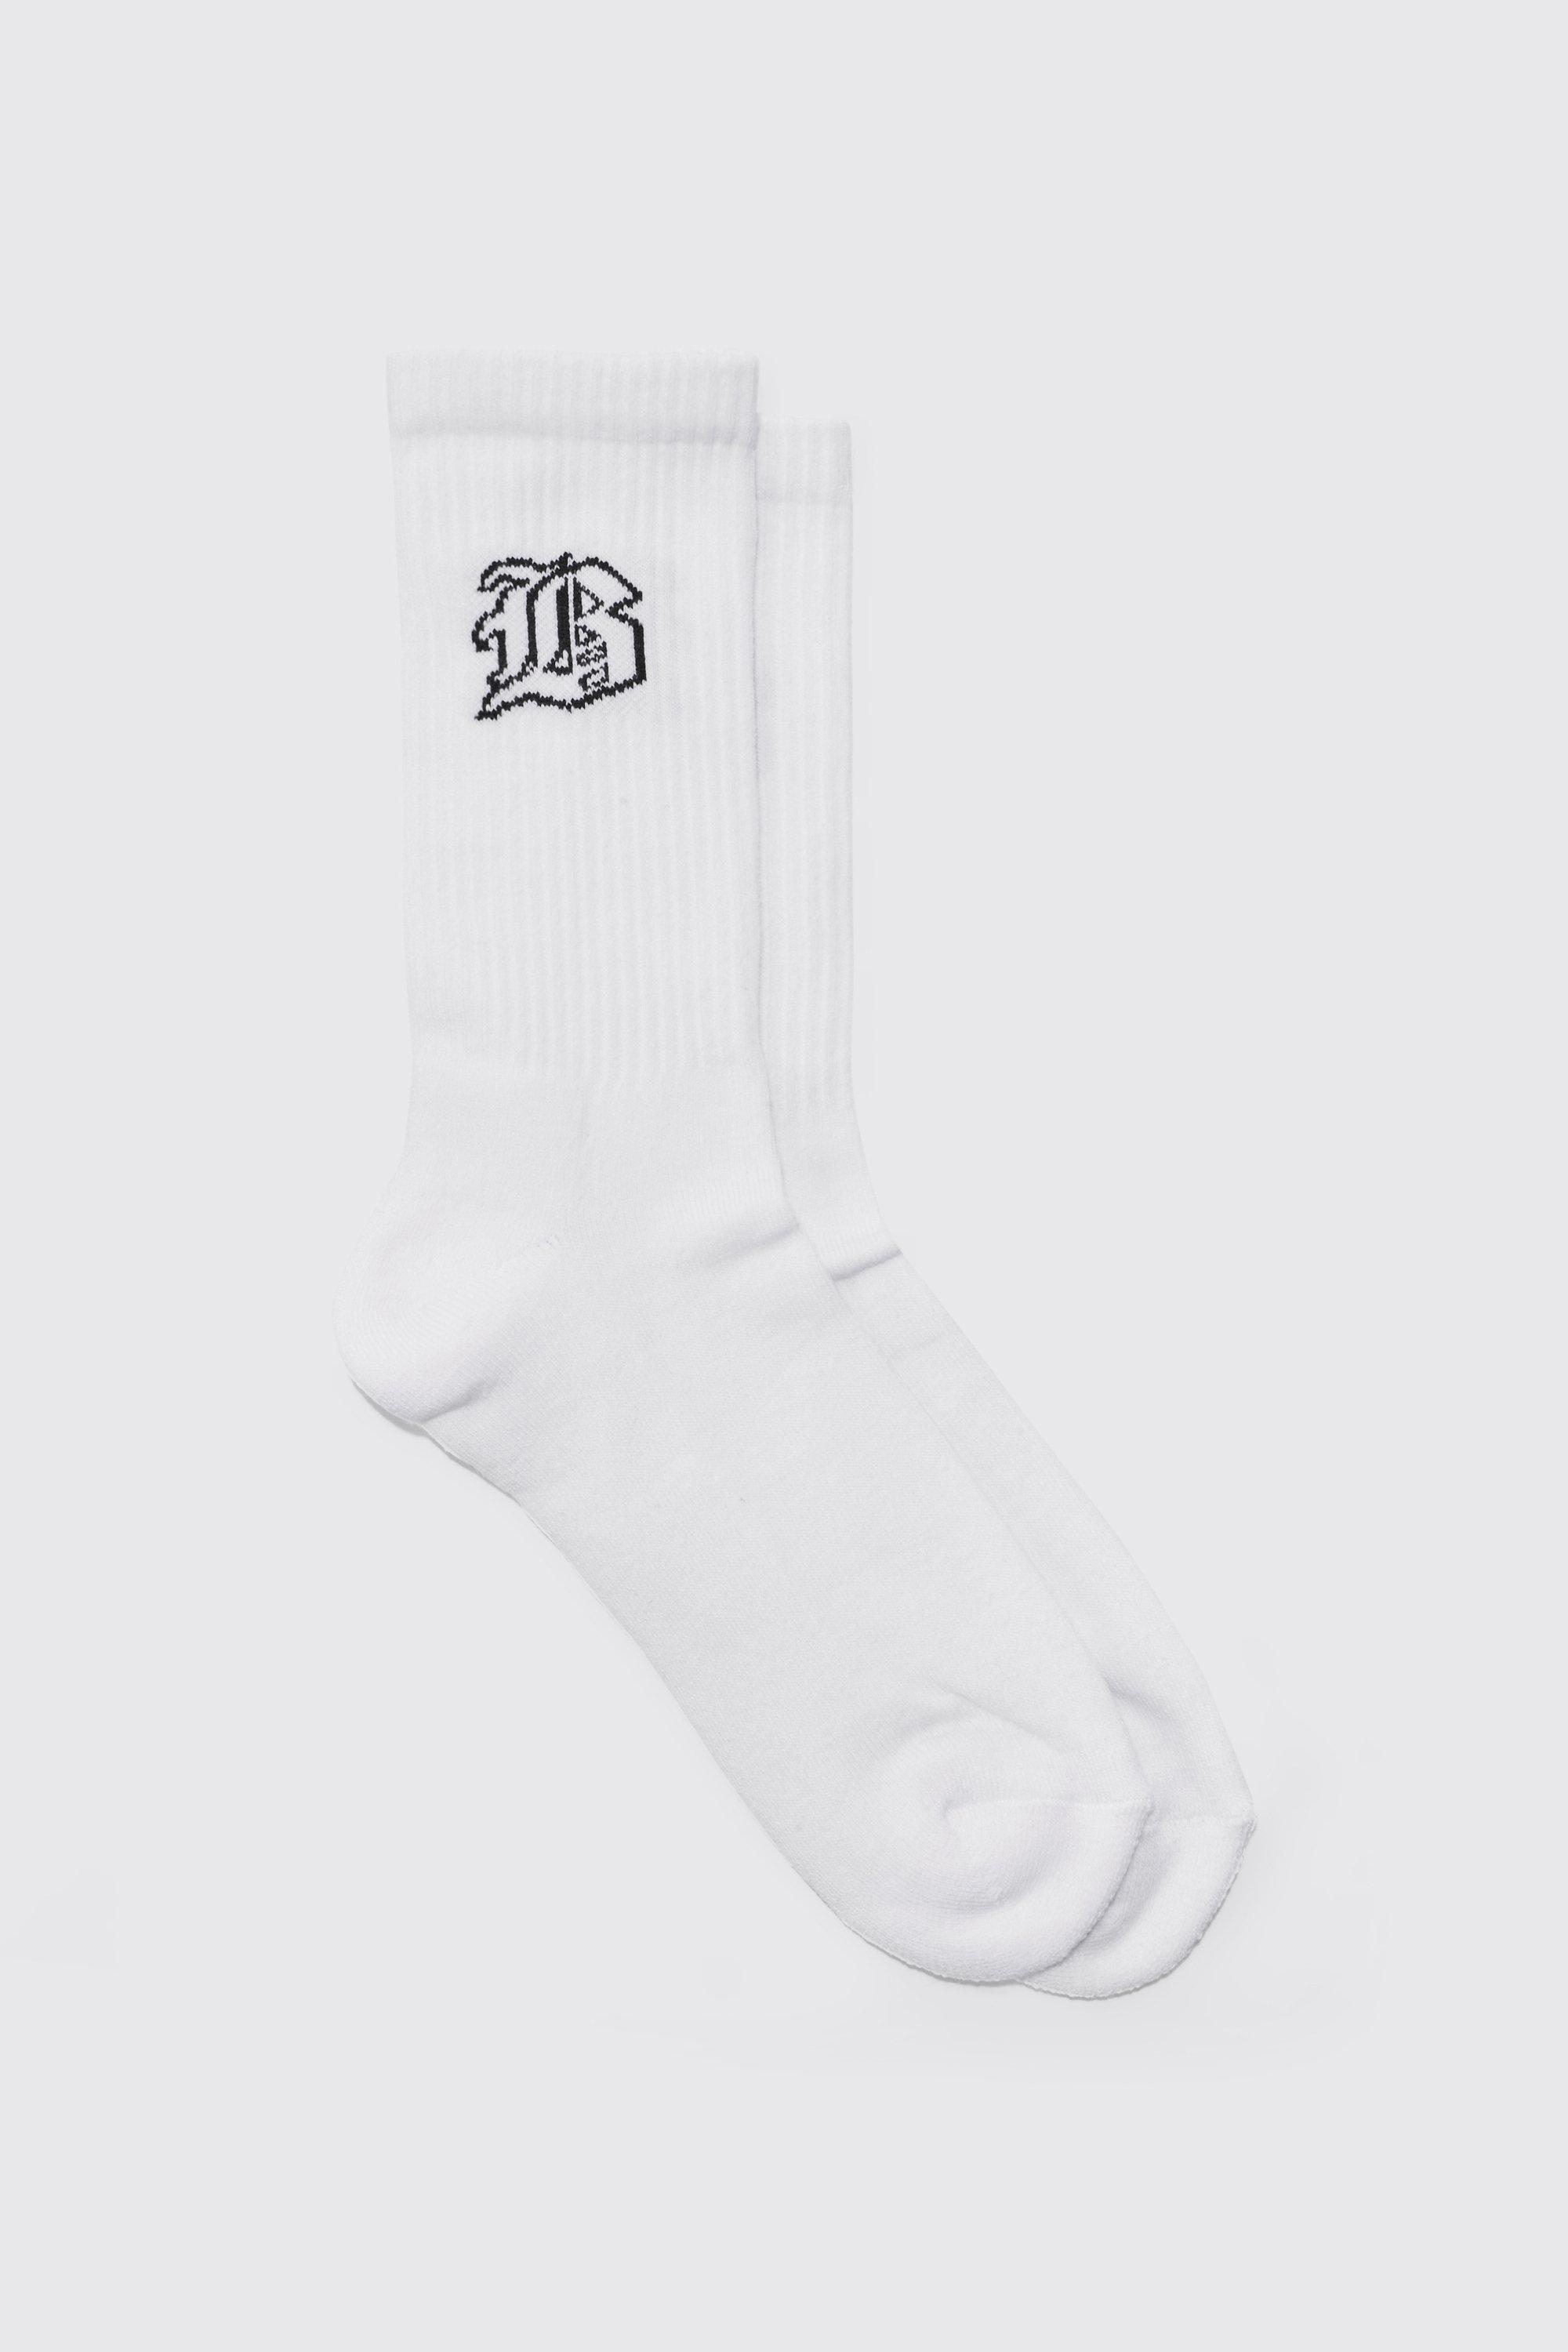 men's gothic b sports socks - white - one size, white